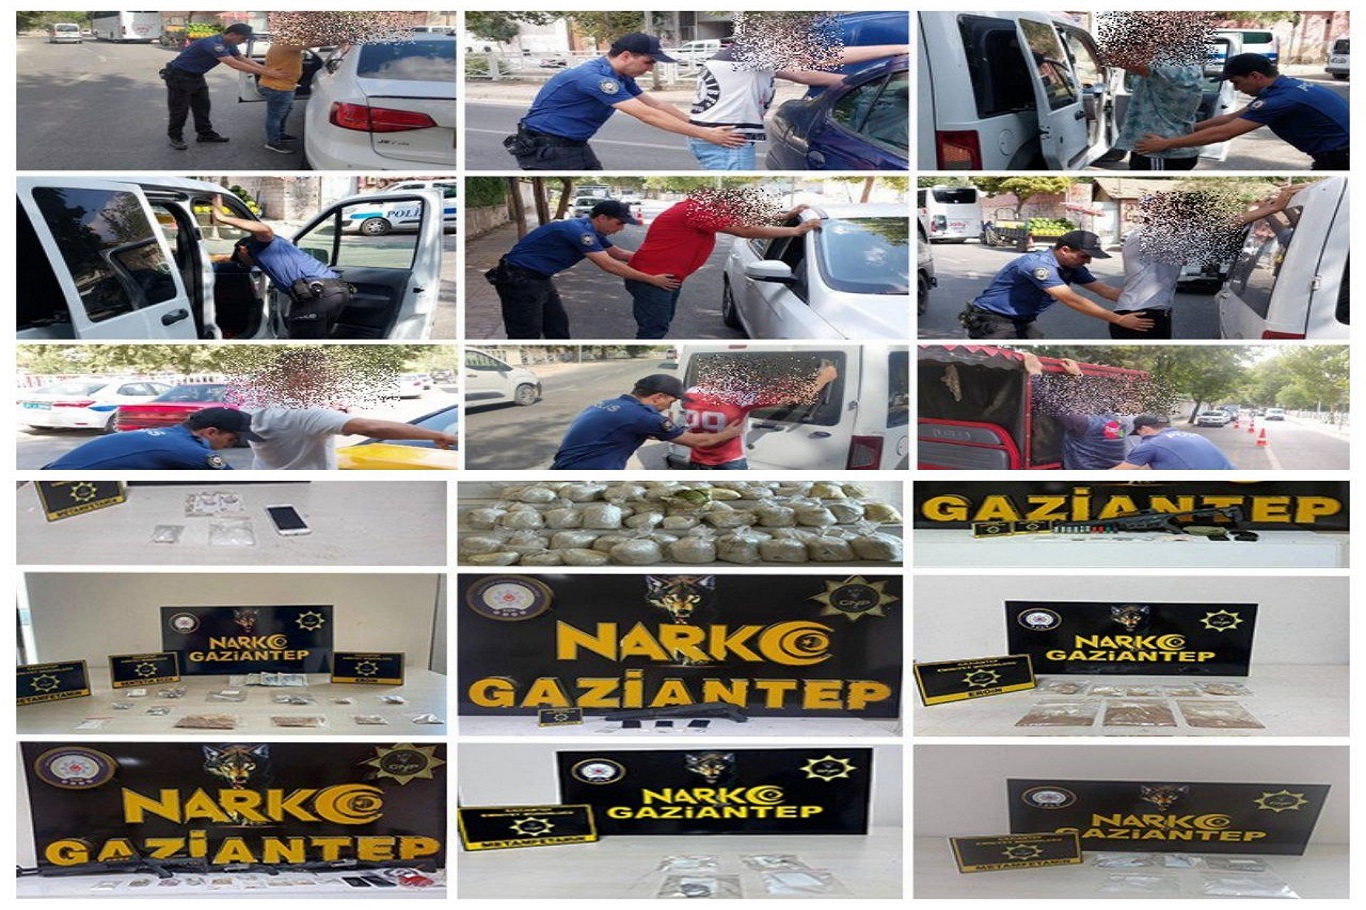  Gaziantep’te uyuşturucu operasyonu : 361 gözaltı